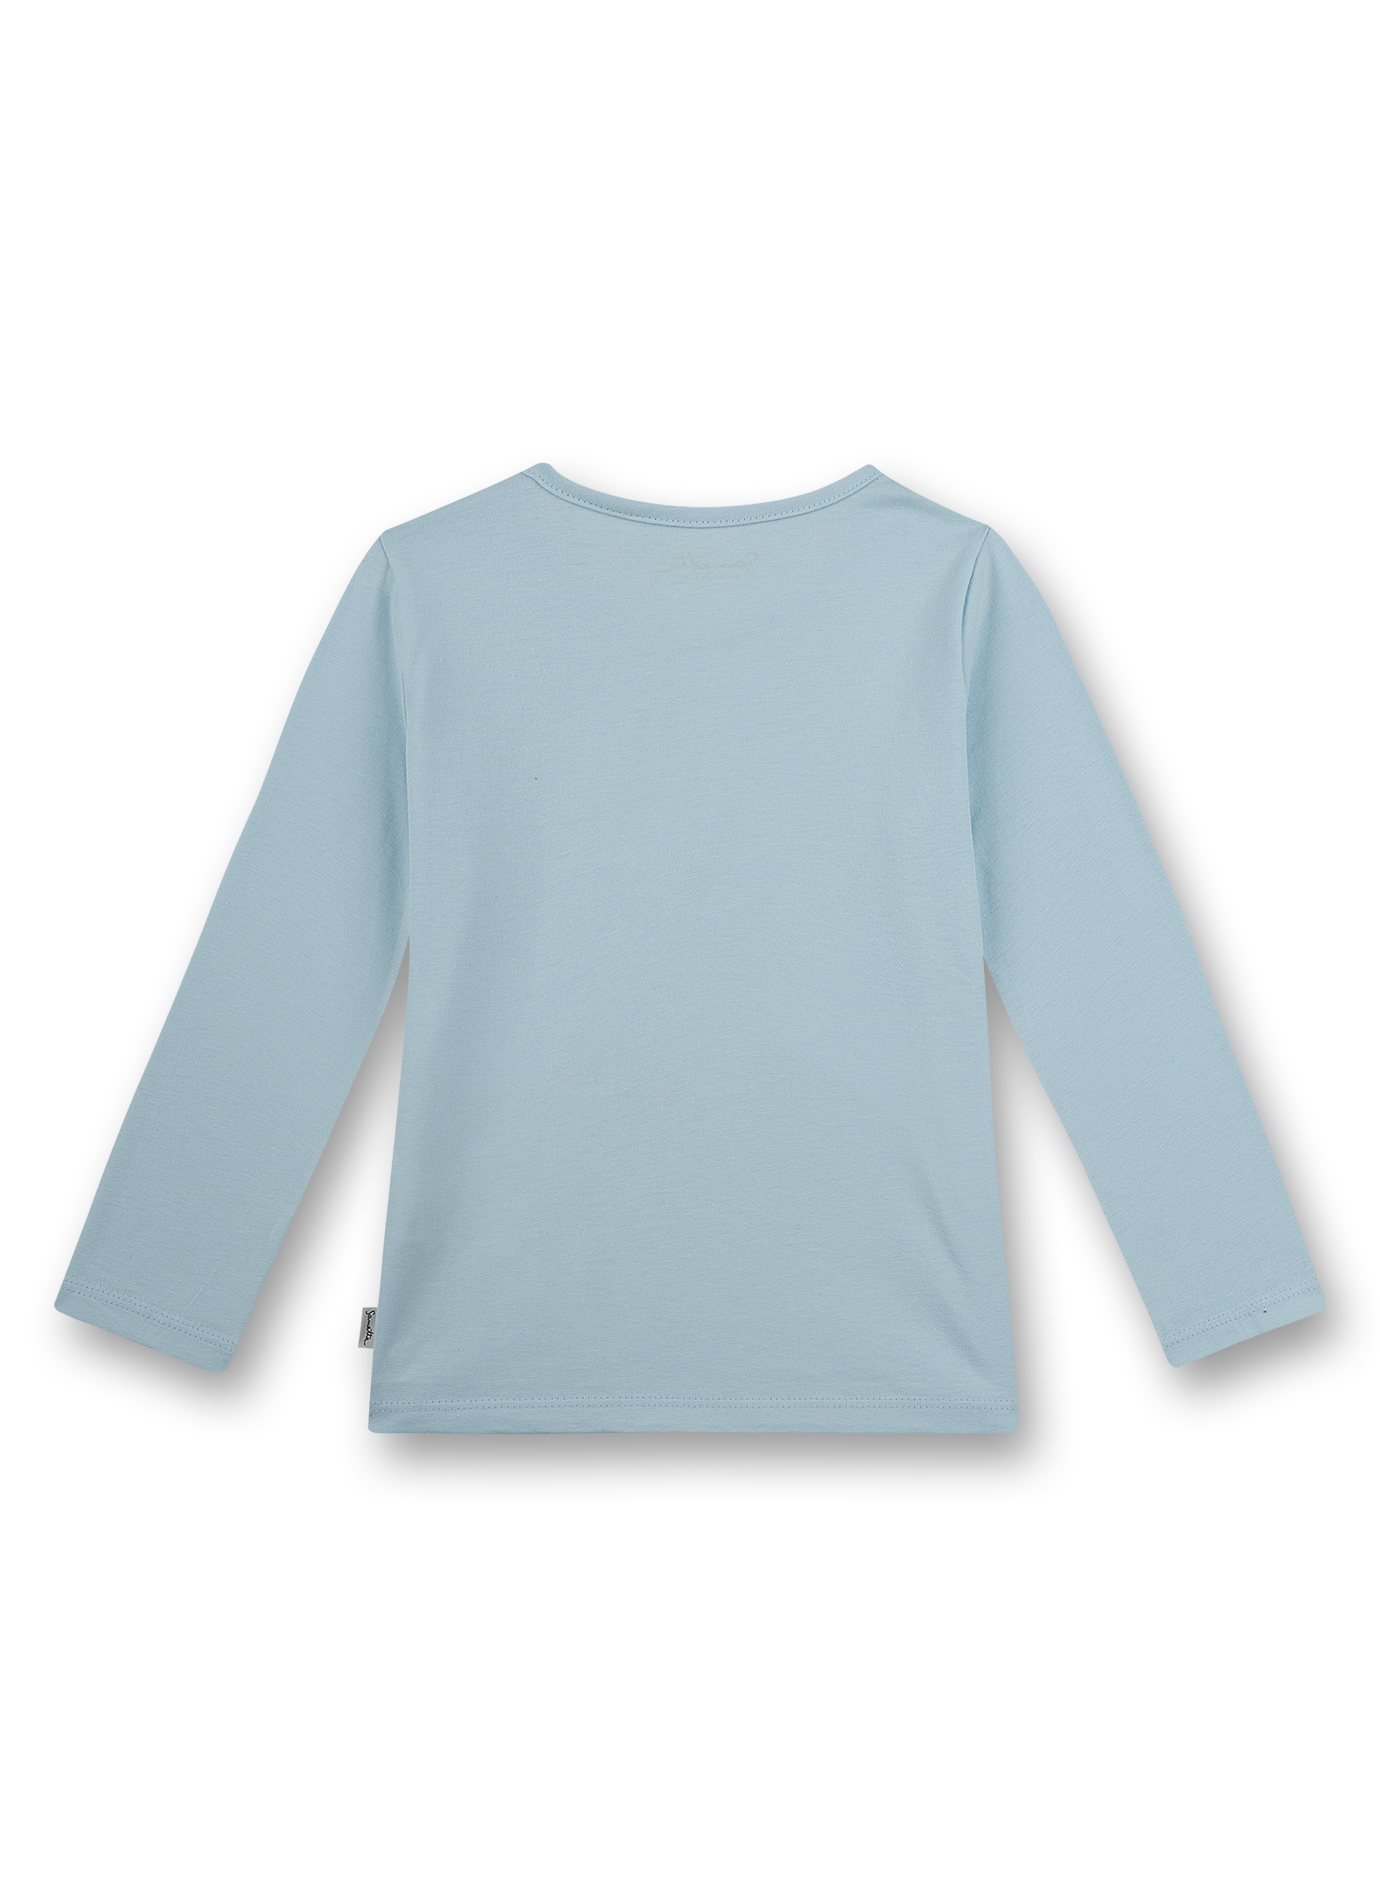 Mädchen-Shirt langarm Hellblau Flower